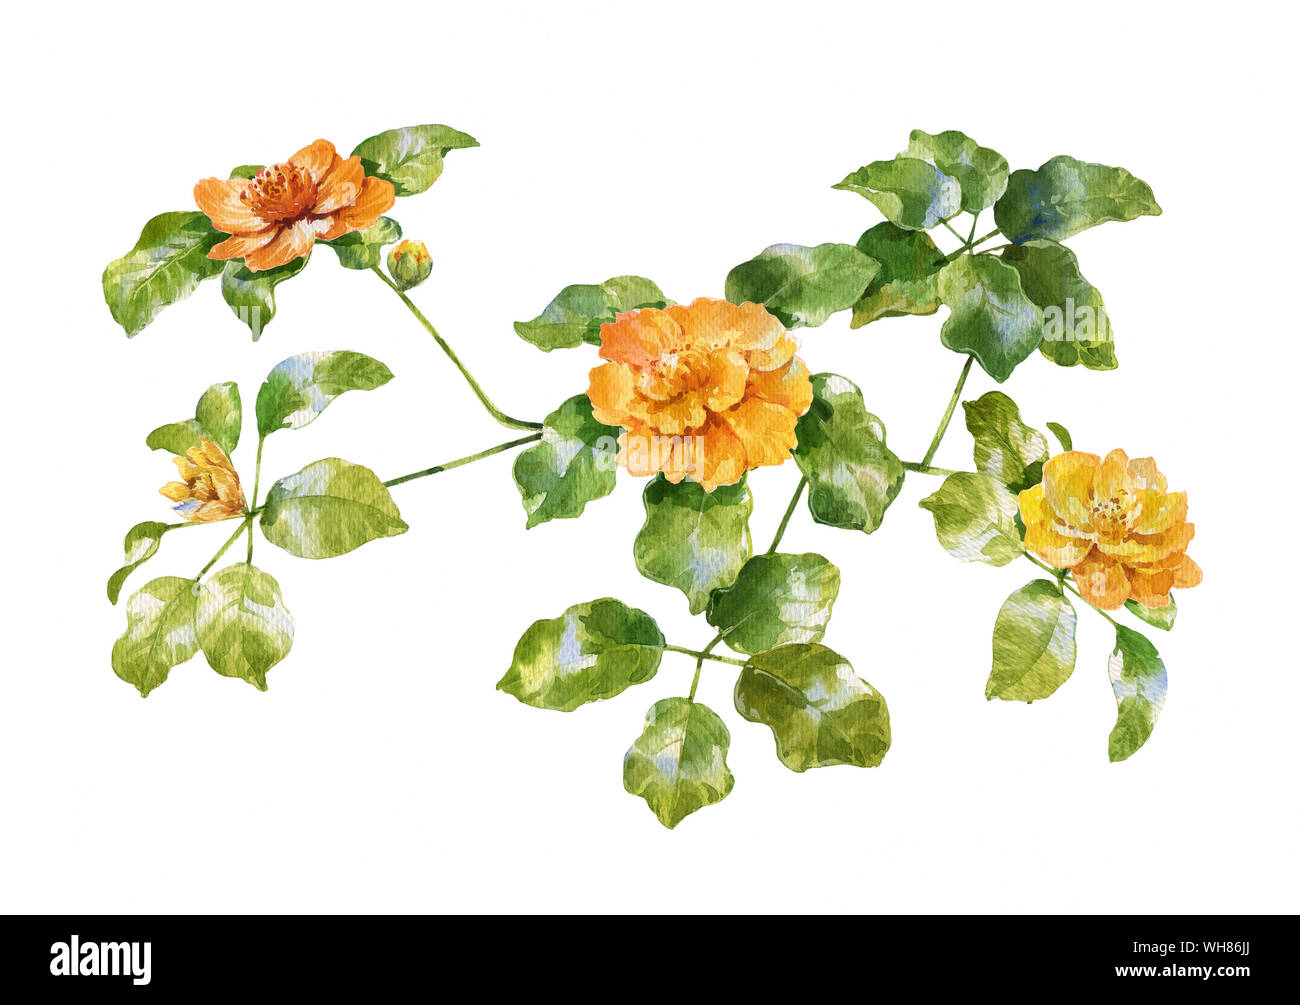 Aquarell von Blättern und Blumen auf weißem Hintergrund Stockfoto